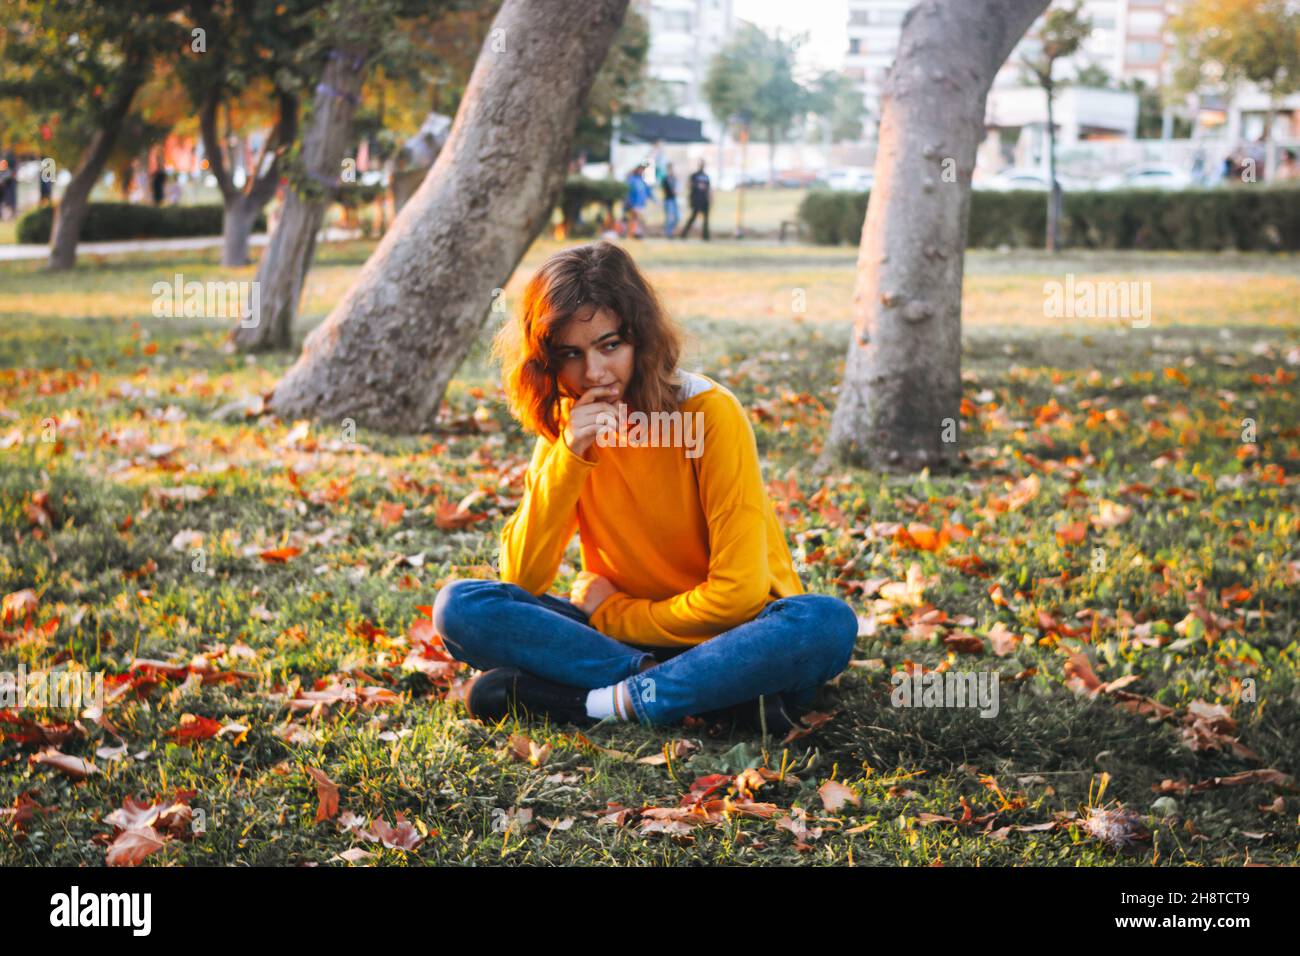 Giovane ragazza curly in maglione giallo e jeans seduti su erba caduta con foglie secche. Foto Stock